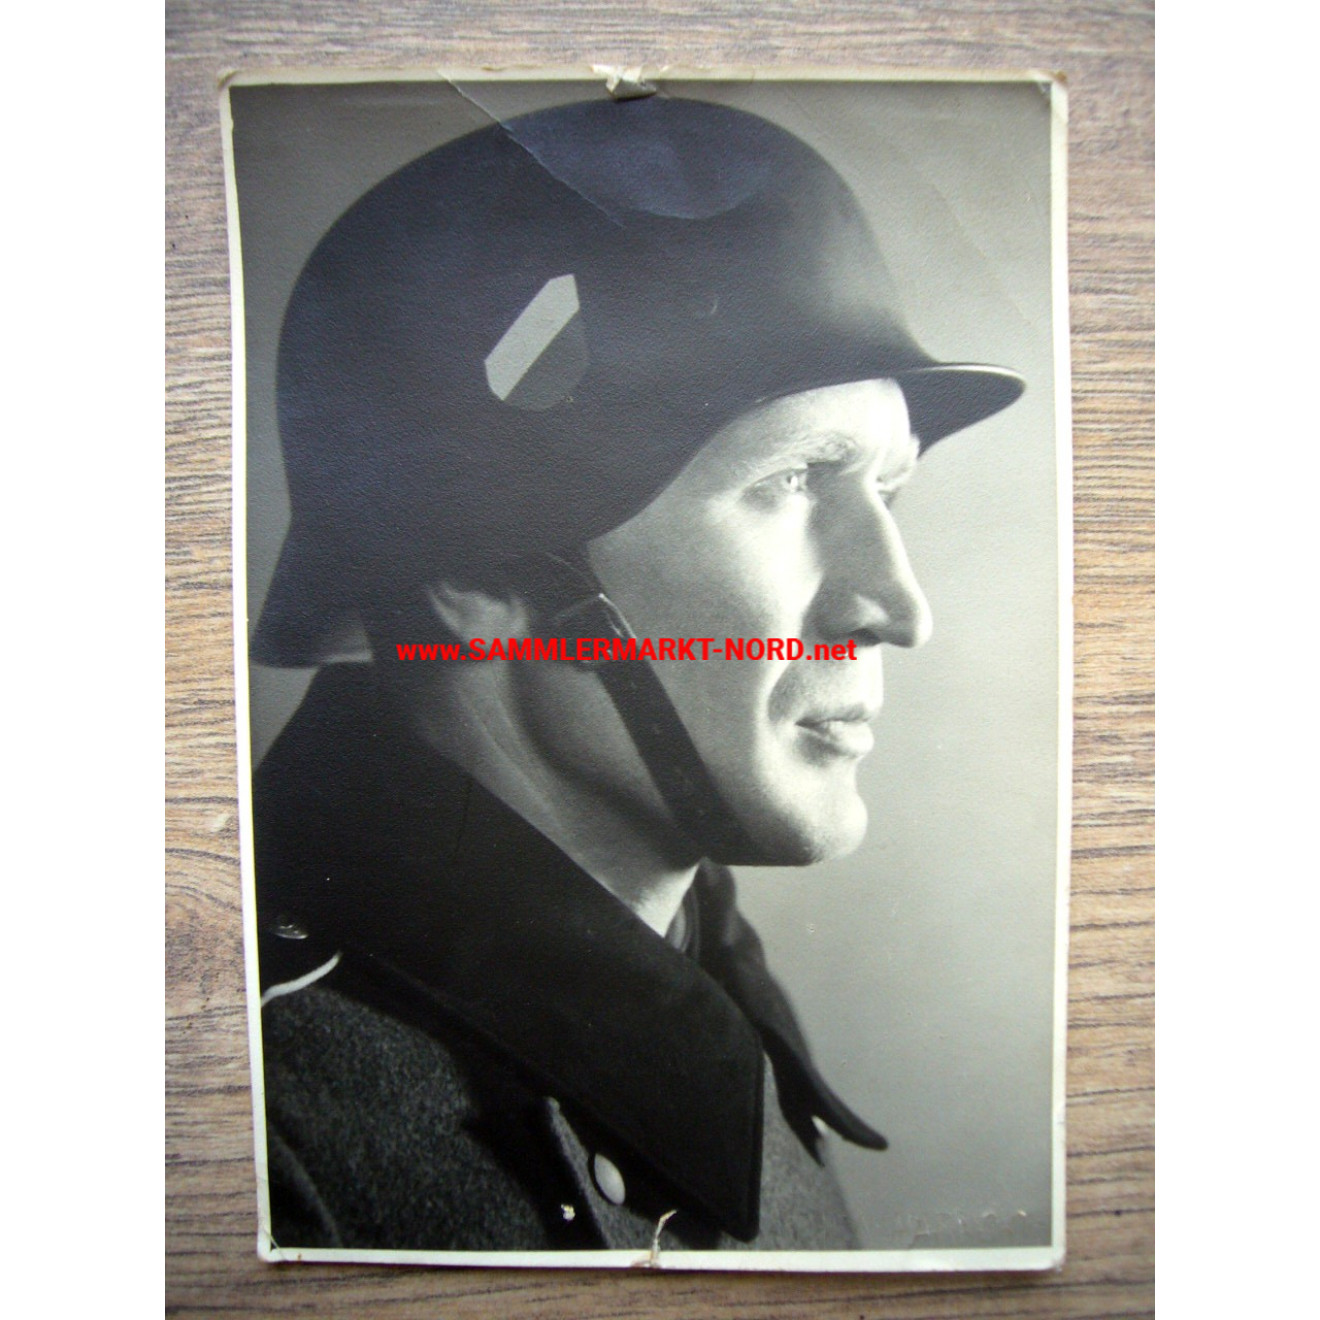 Wehrmacht Soldier with Steel Helmet (Crest)